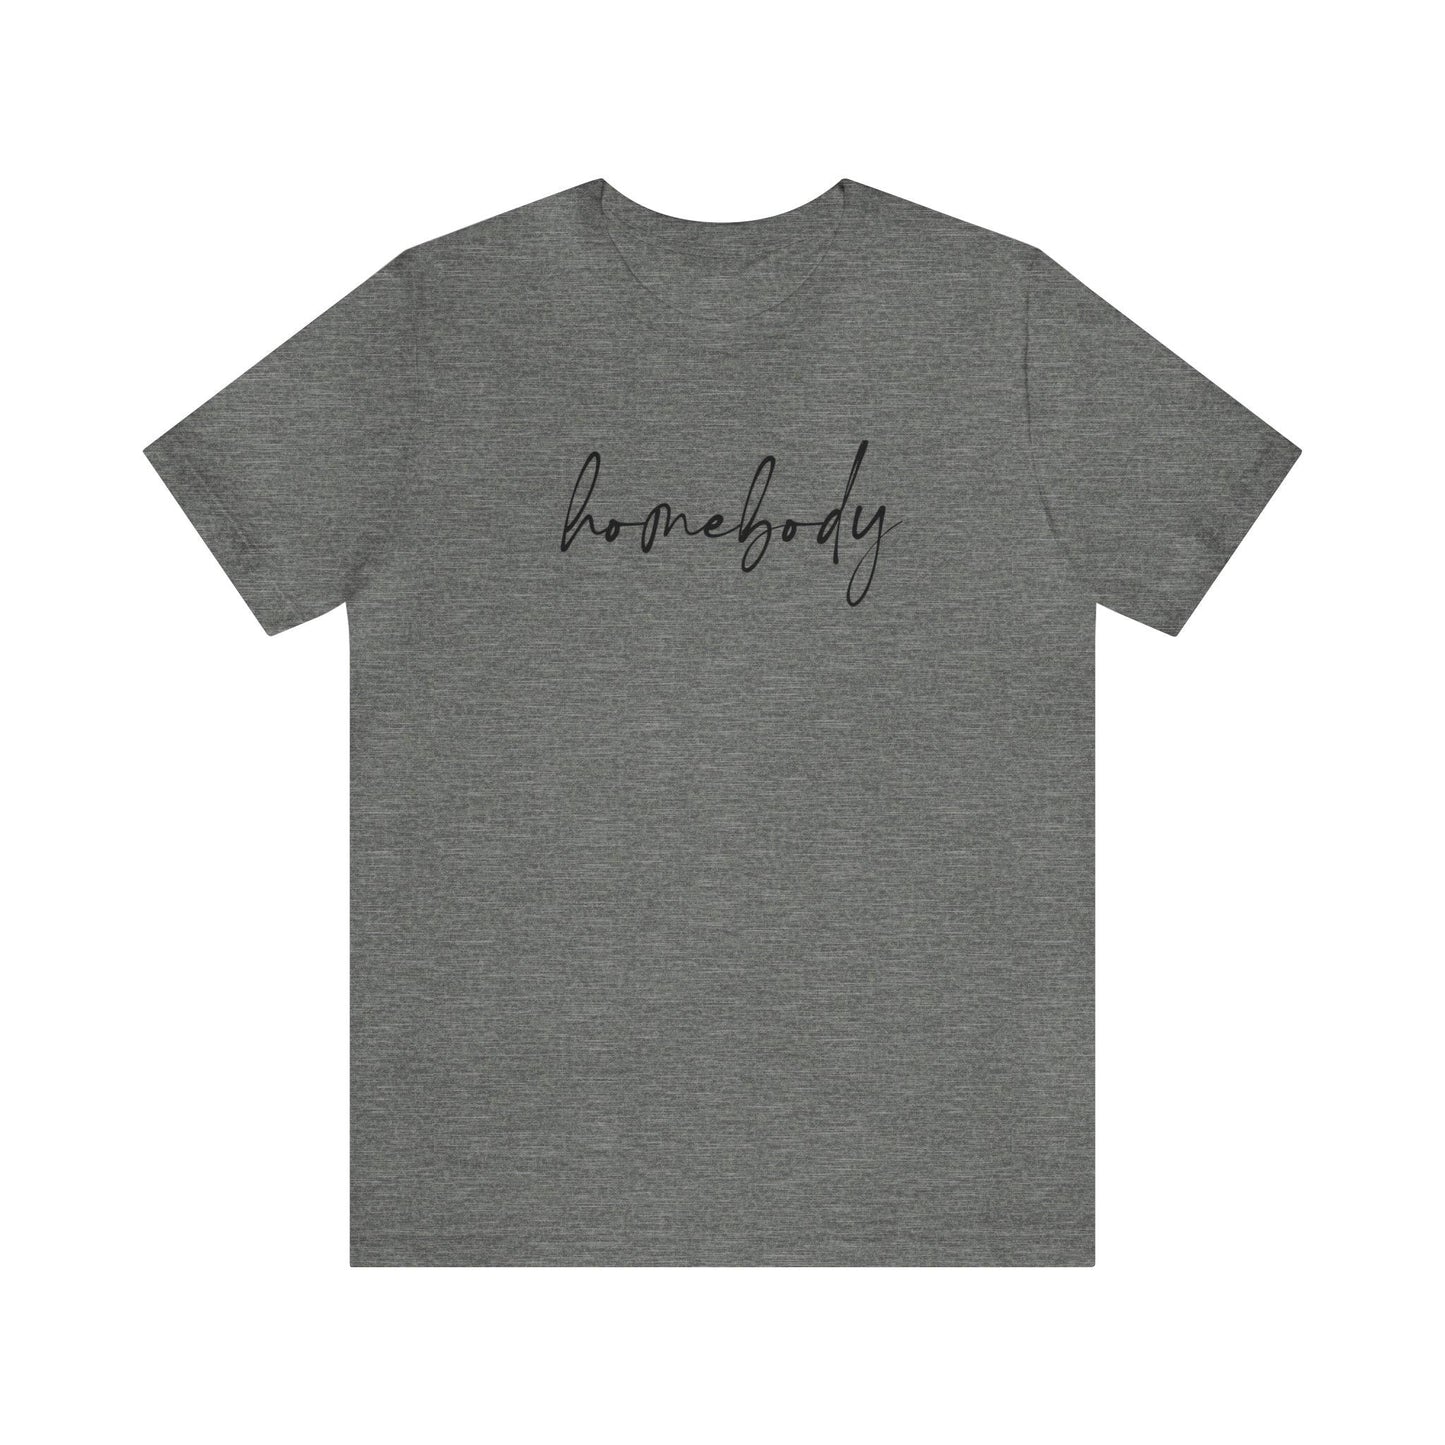 Homebody Shirt - BentleyBlueCo